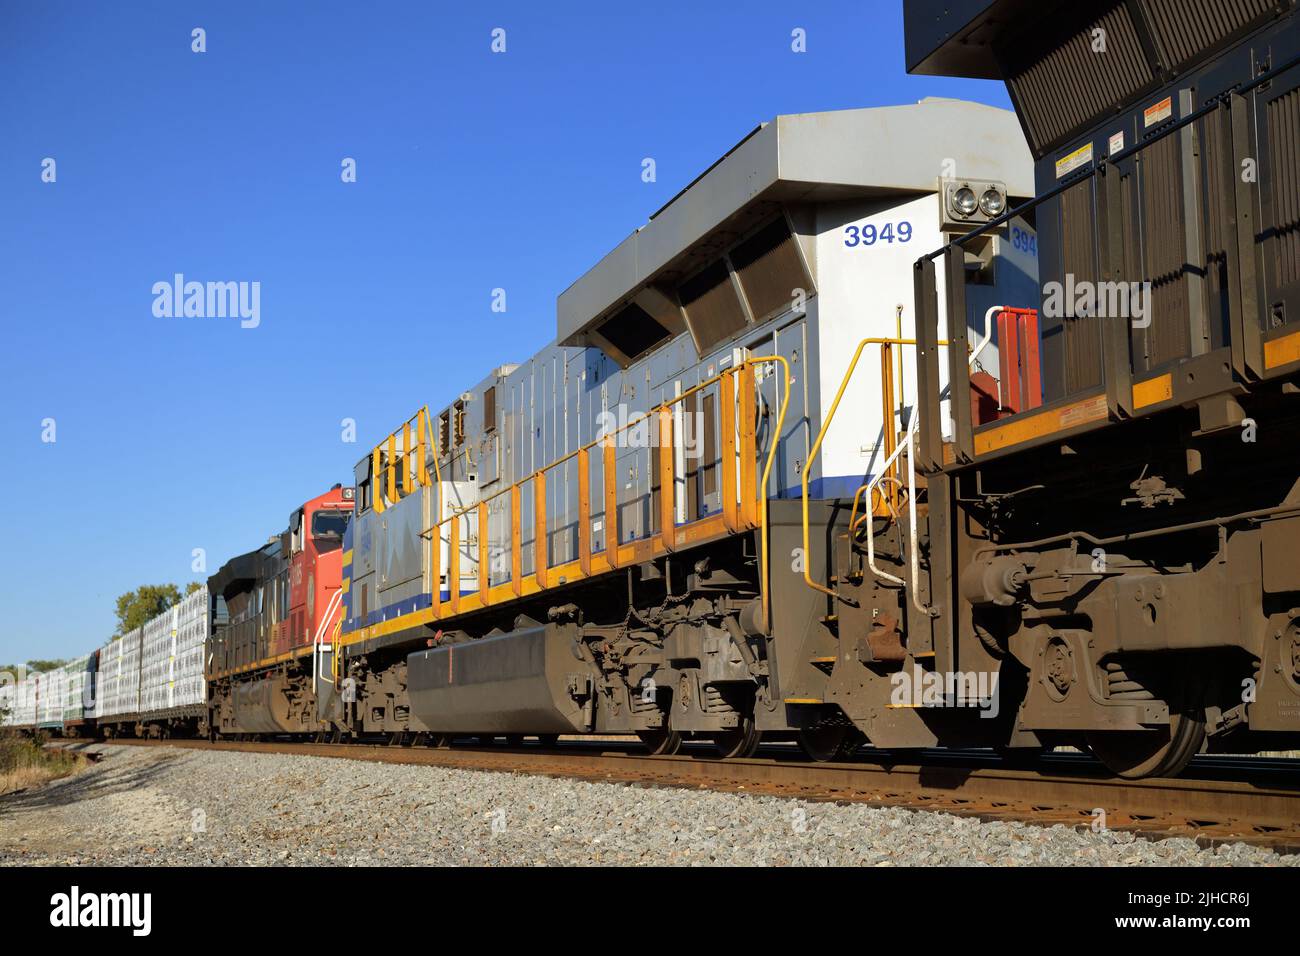 Hoffman Estates, Illinois, États-Unis.Un trio de locomotives du canadien National dirigent un train de marchandises dans une section rurale du nord-est de l'Illinois. Banque D'Images